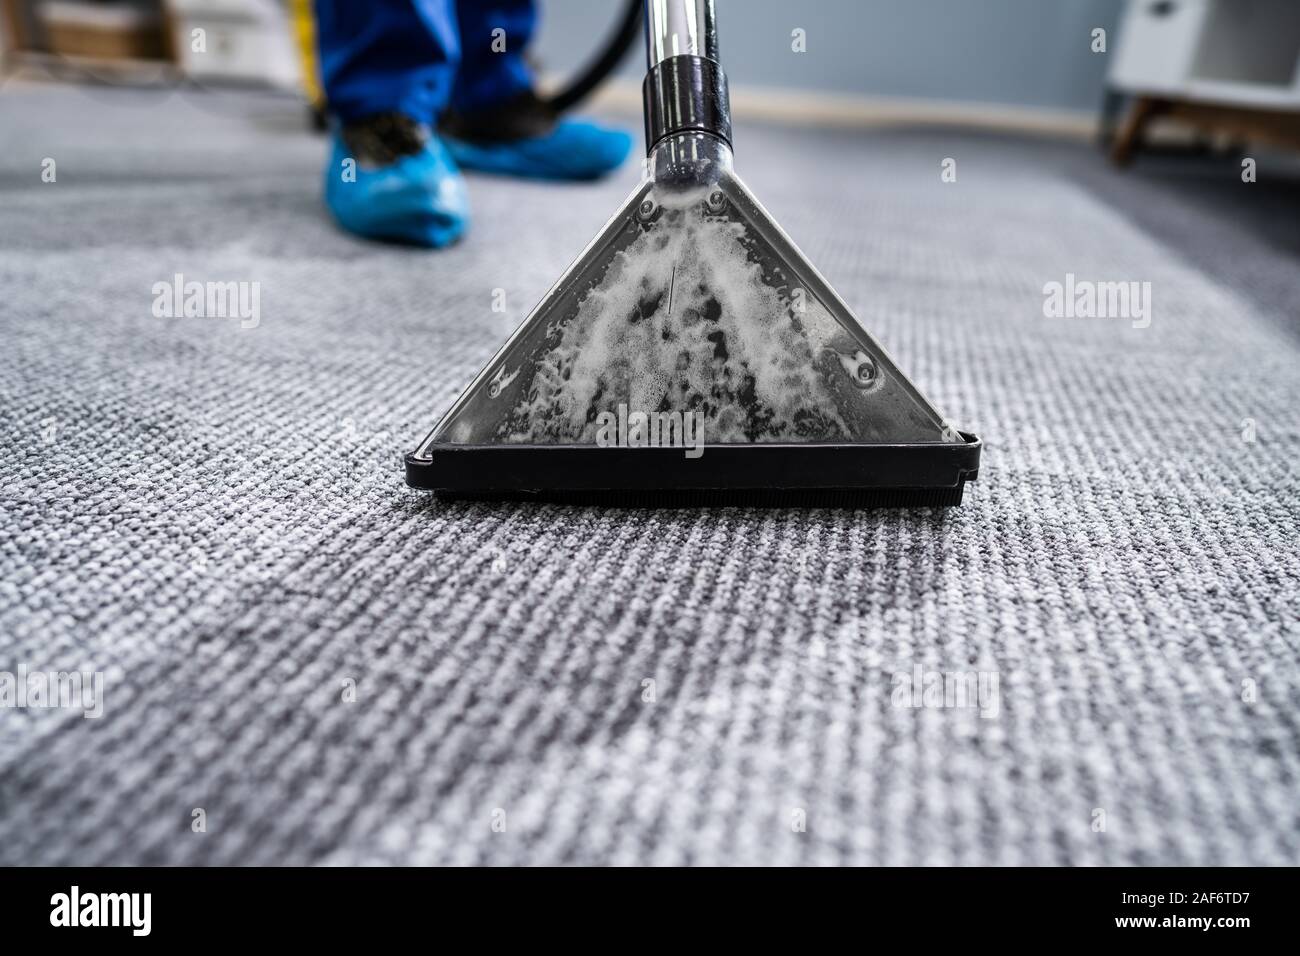 Close-up d'un tapis de Nettoyage avec aspirateur Banque D'Images